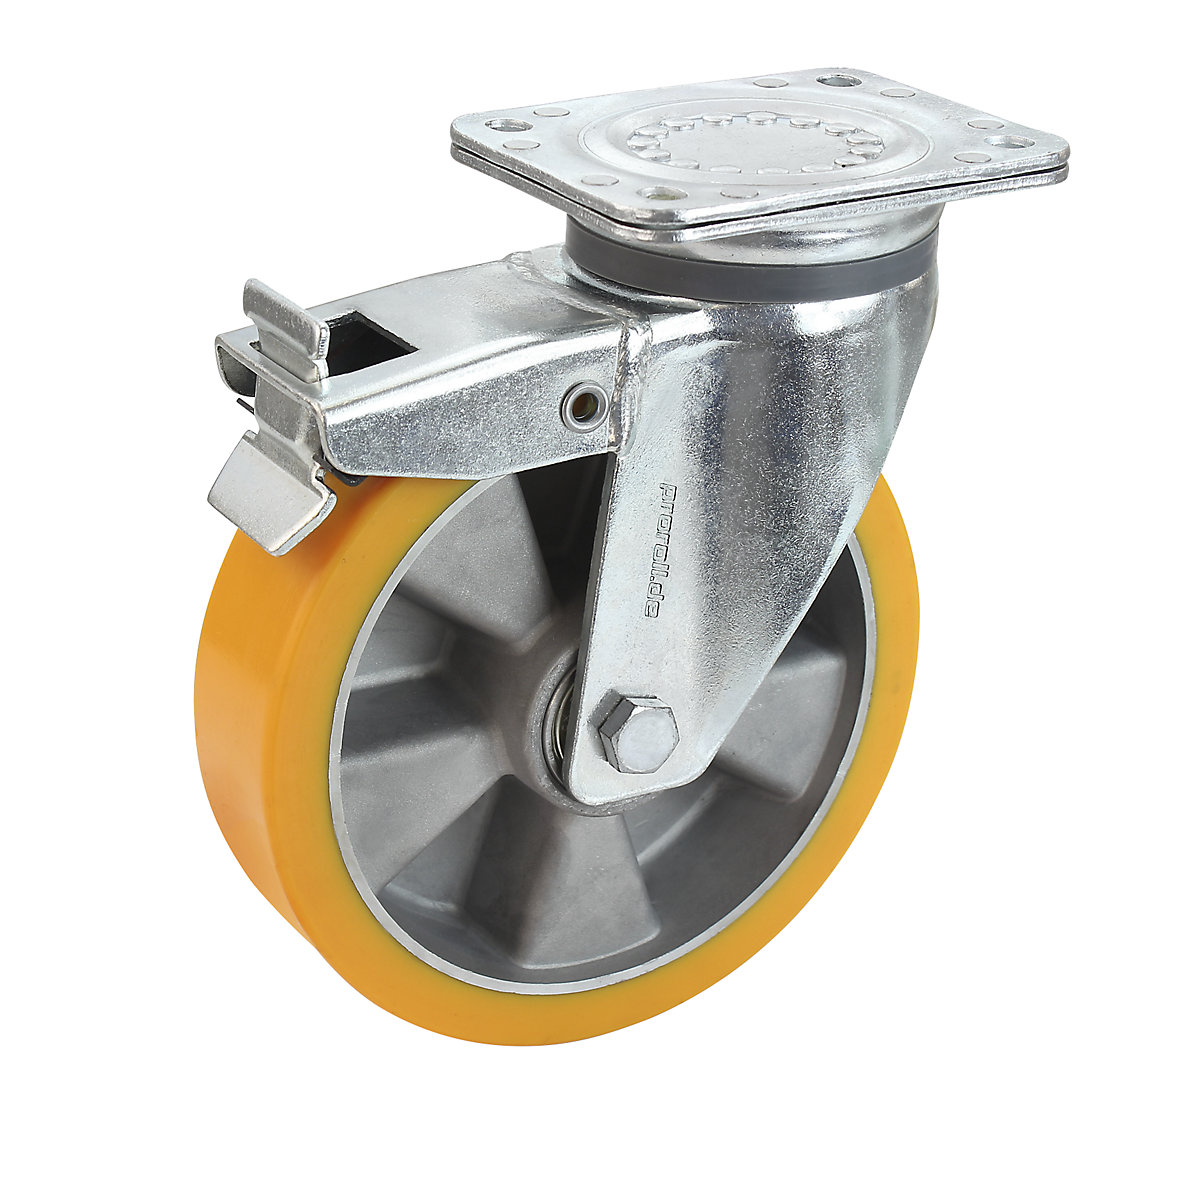 Obruč z PU na hliníkovom disku – Proroll, Ø x šírka kolesa 100 x 40 mm, otočné koliesko s dvojitou brzdou-4